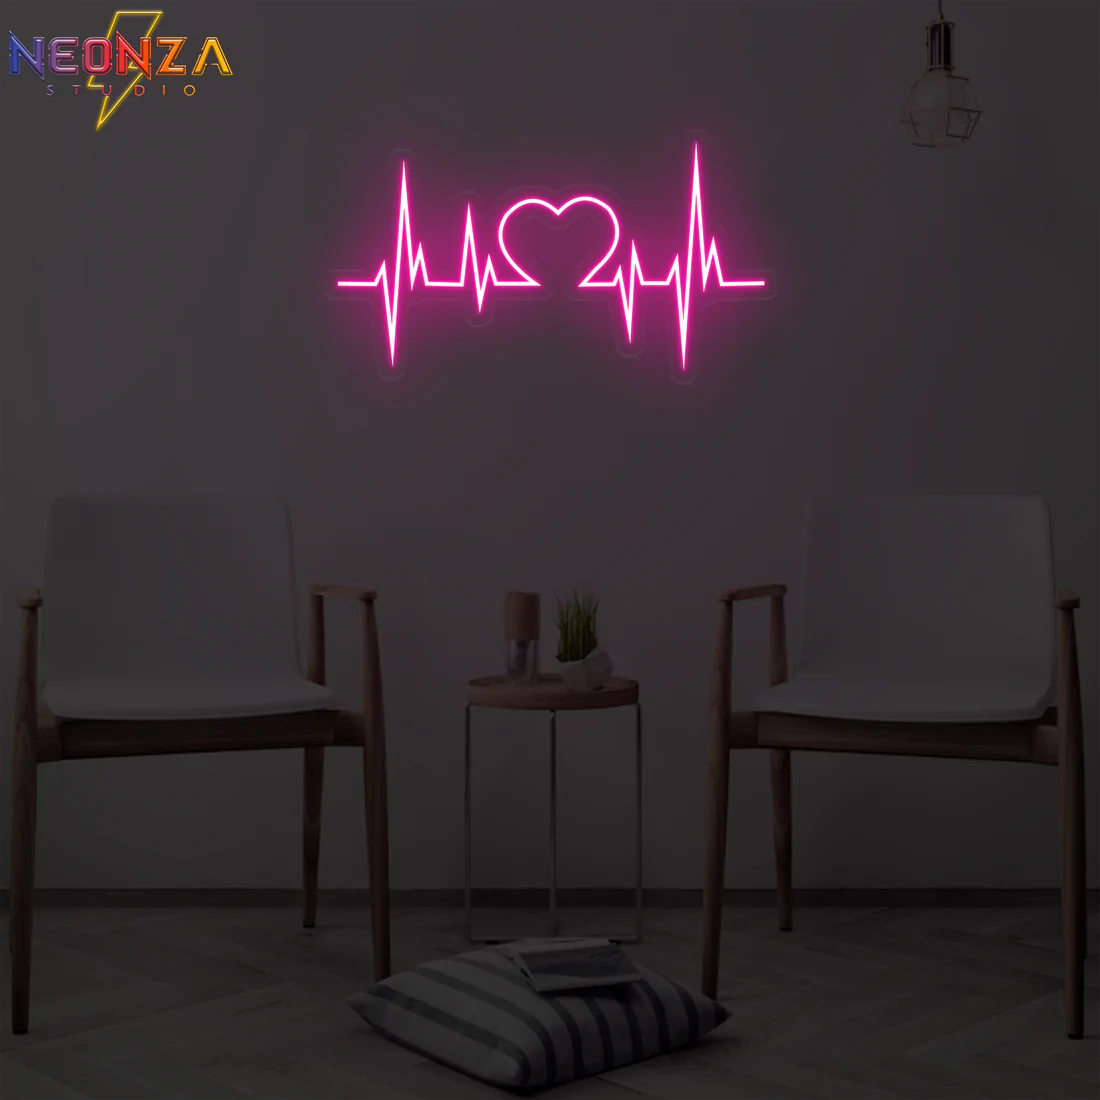 Heartbeat Neon Sign - Neonzastudio